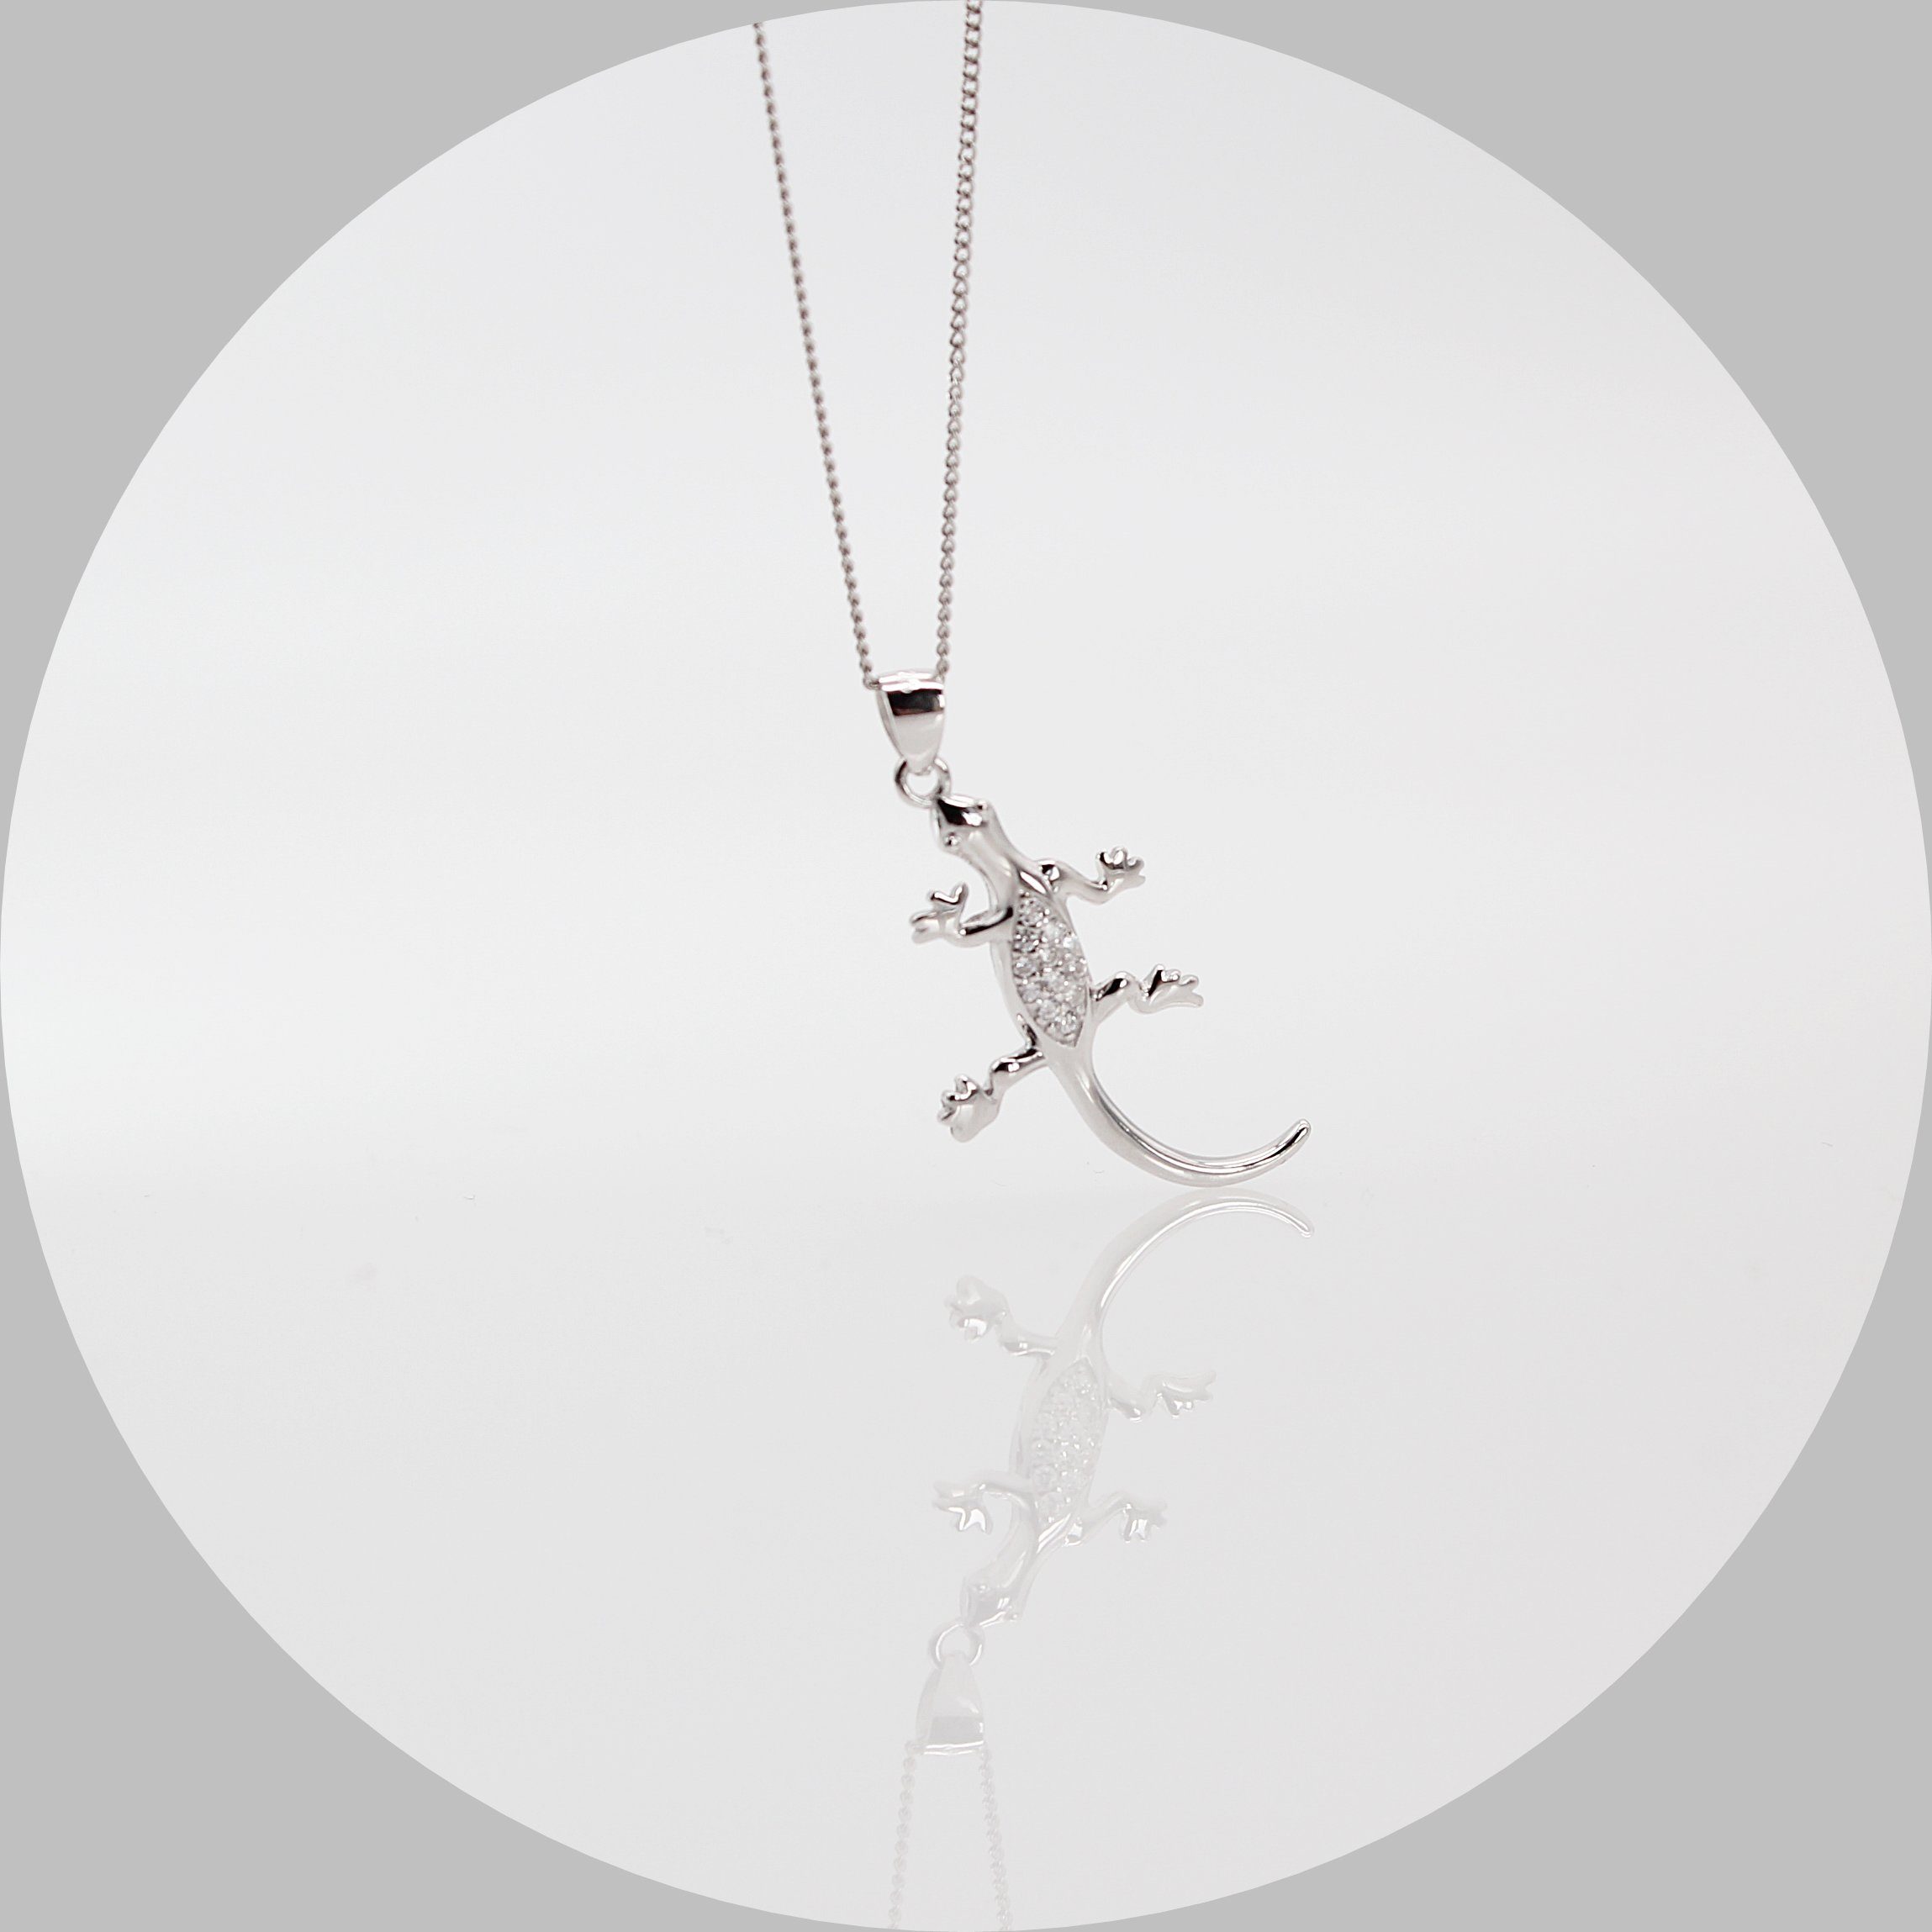 ELLAWIL Silberkette Kette mit Gecko Anhänger Eidechse Echse Halskette mit Tieranhänger (Kettenlänge 40 cm, Sterling Silber 925), inklusive Geschenkschachtel